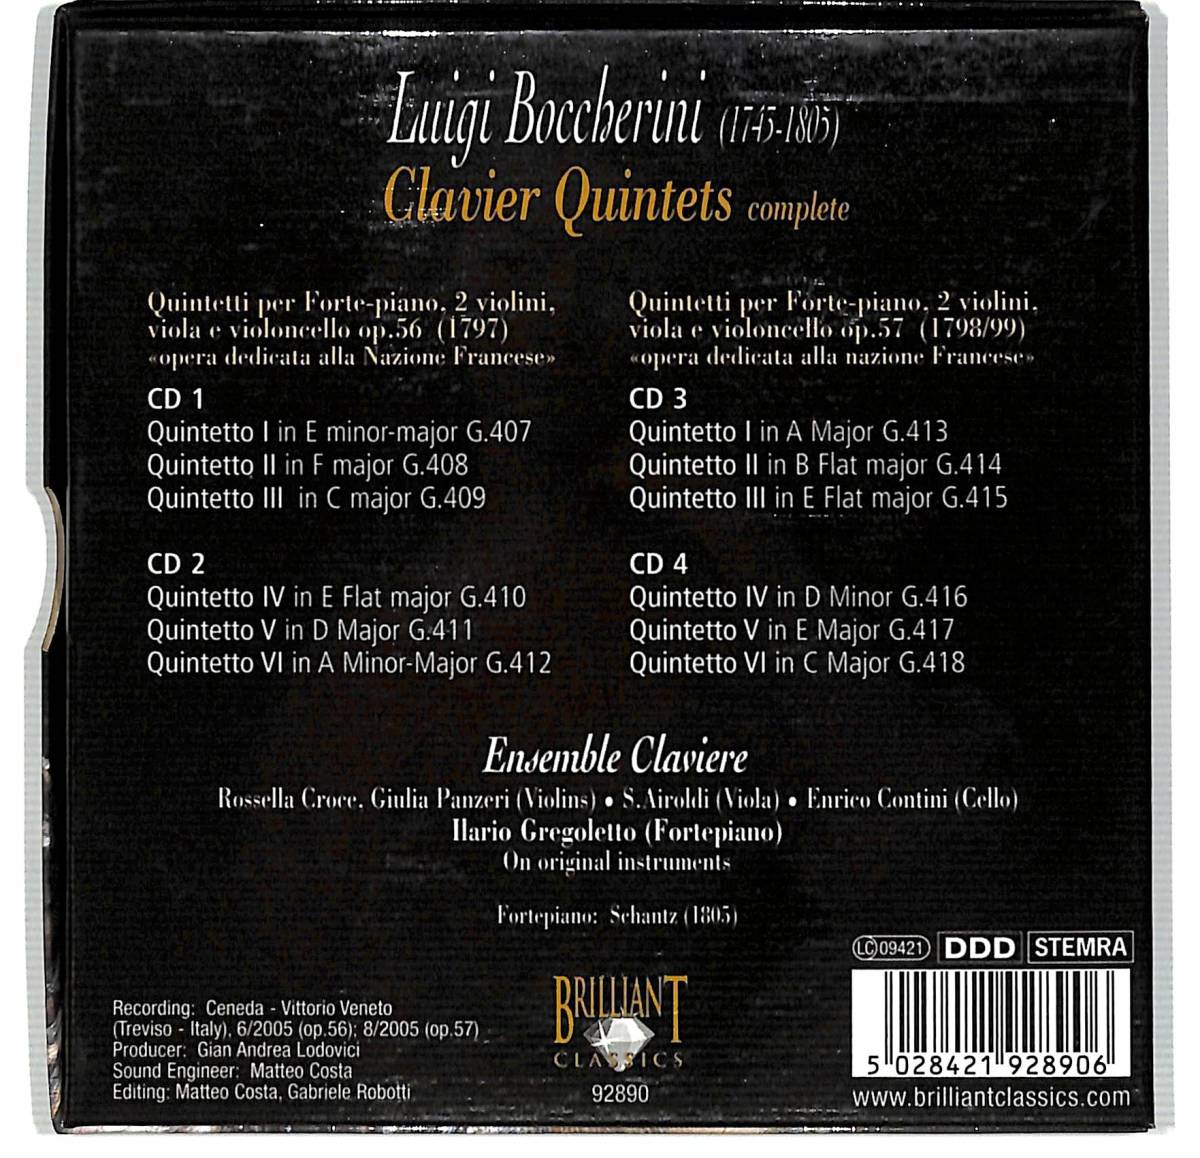 e0344/Brilliant Classics/輸入盤4CD BOX/Boccherini, Ensemble Claviere/Clavier Quintets Complete/ボッケリーニ_画像2